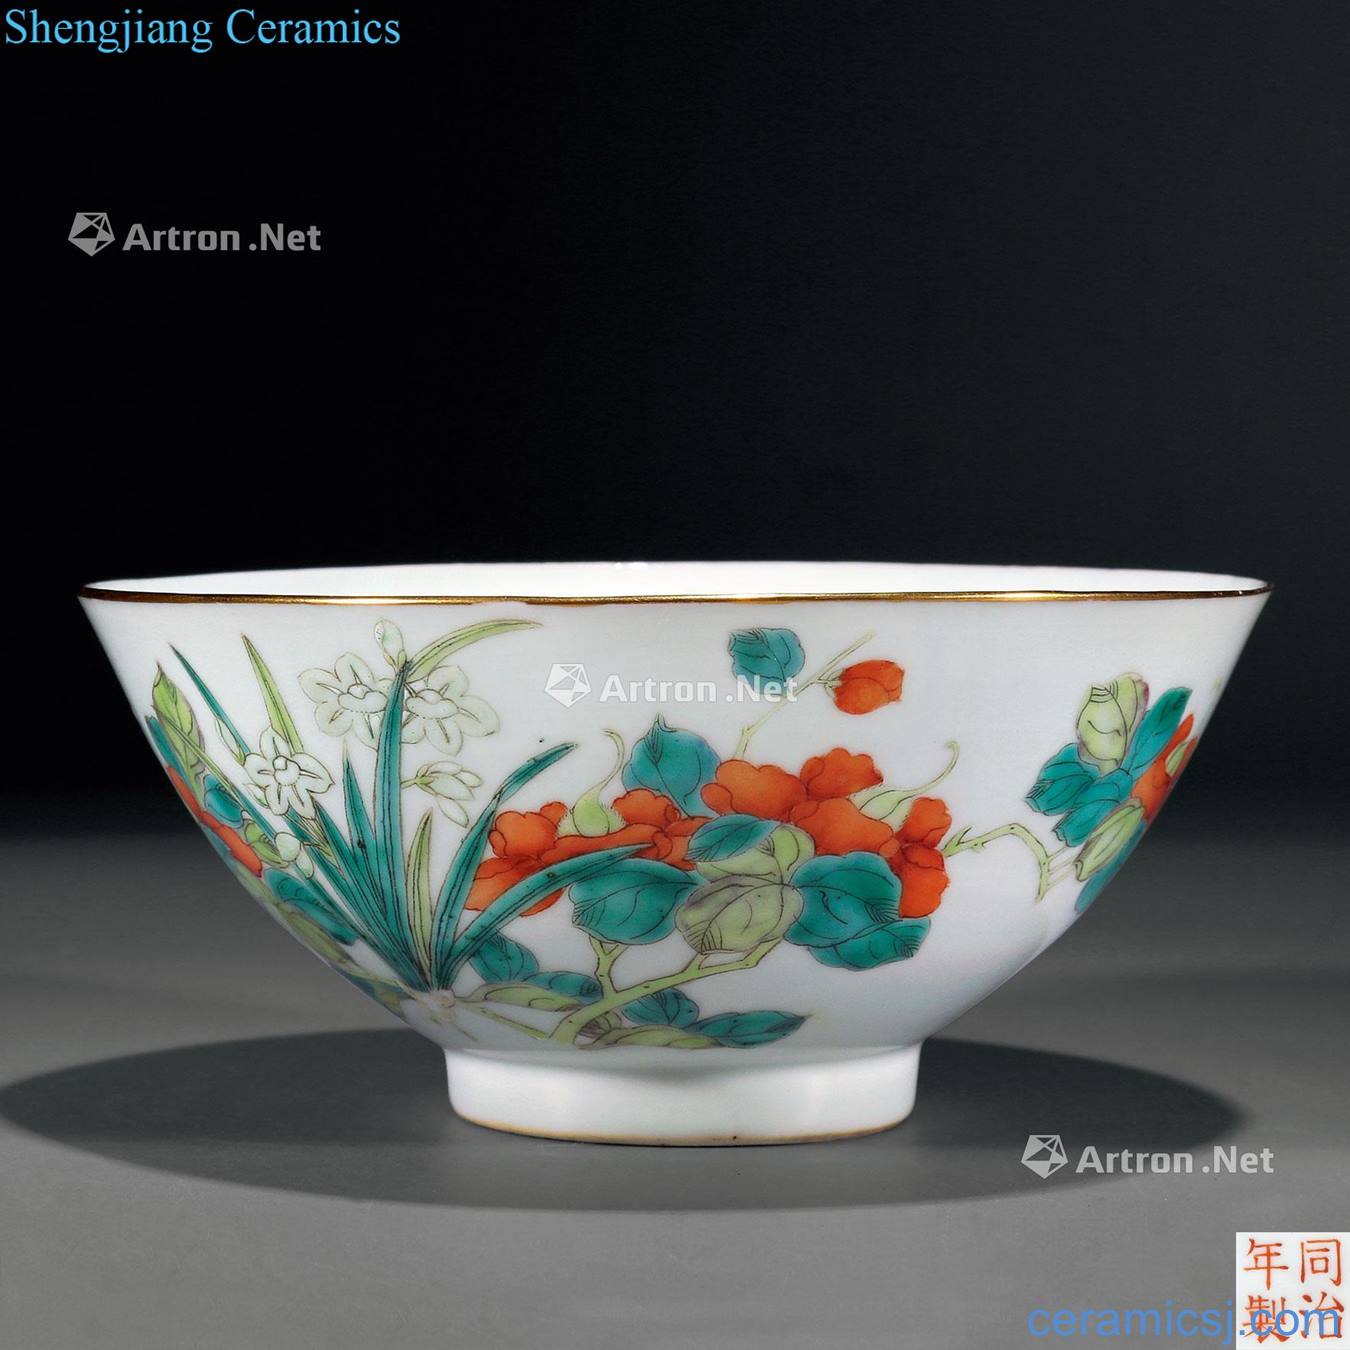 Dajing pastel flowers green-splashed bowls